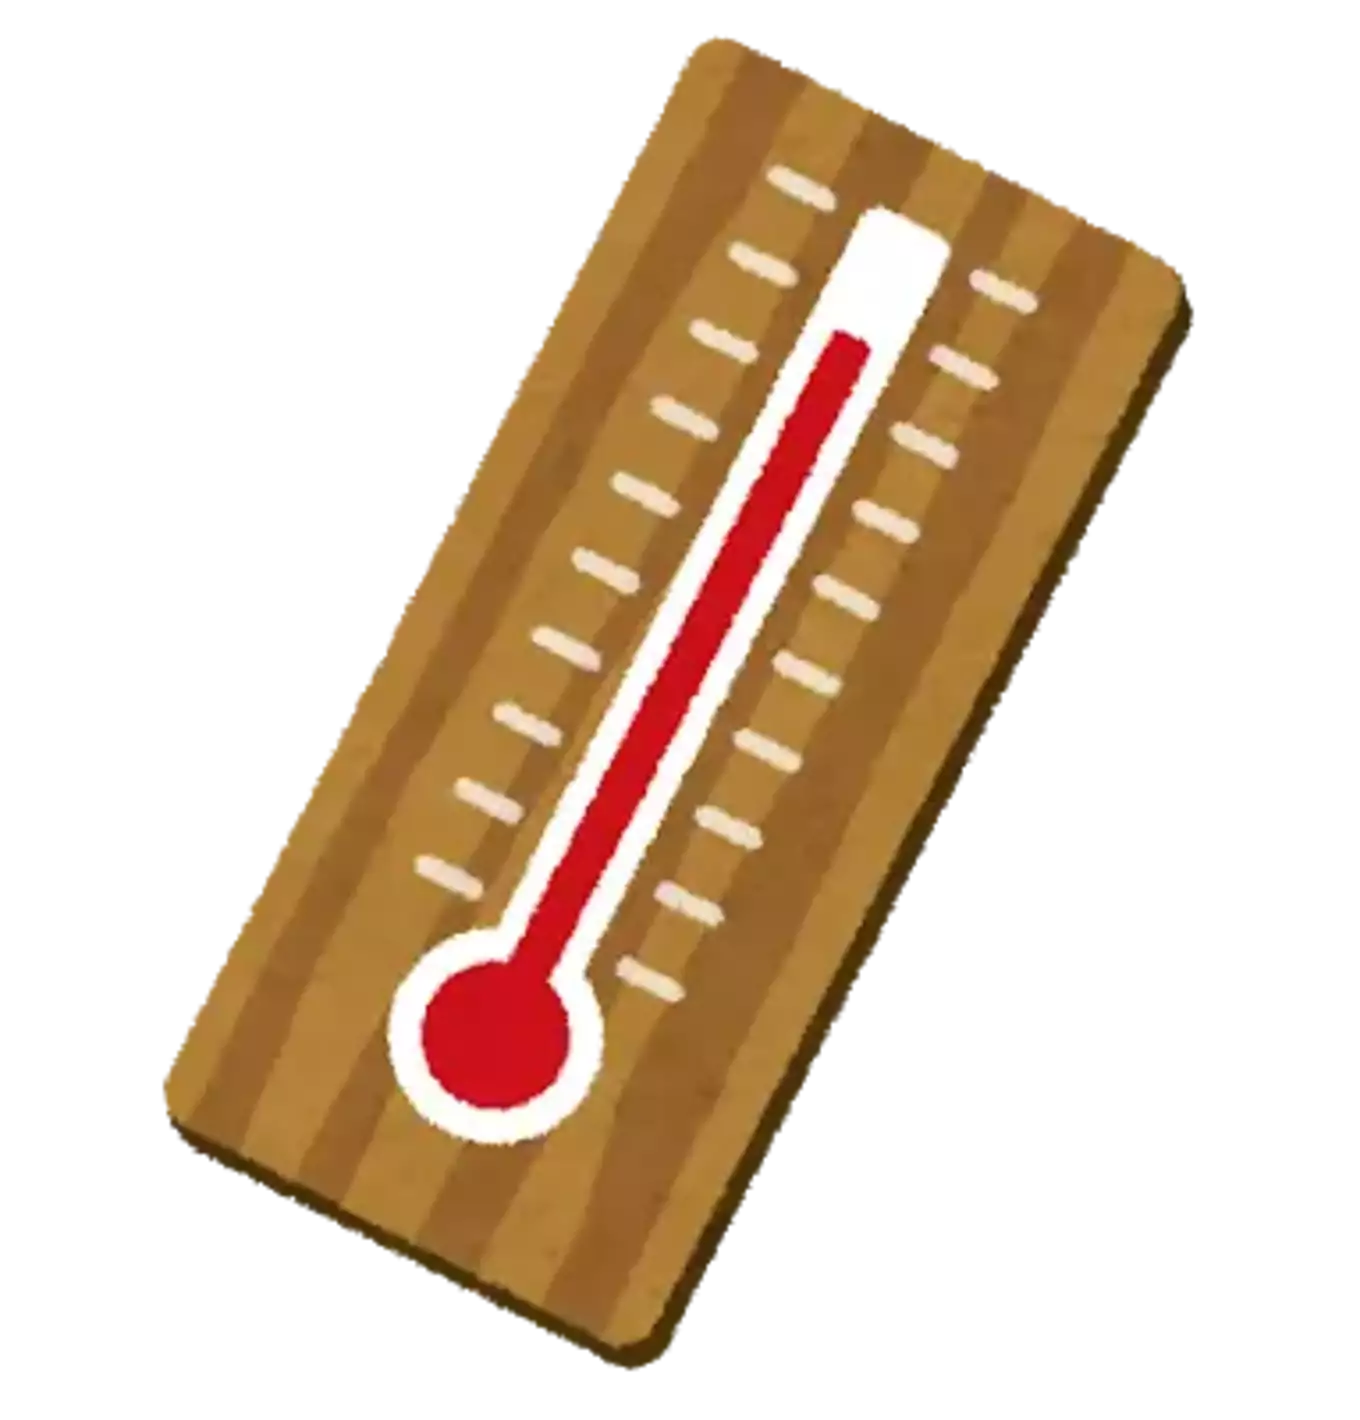 温度計のイラスト